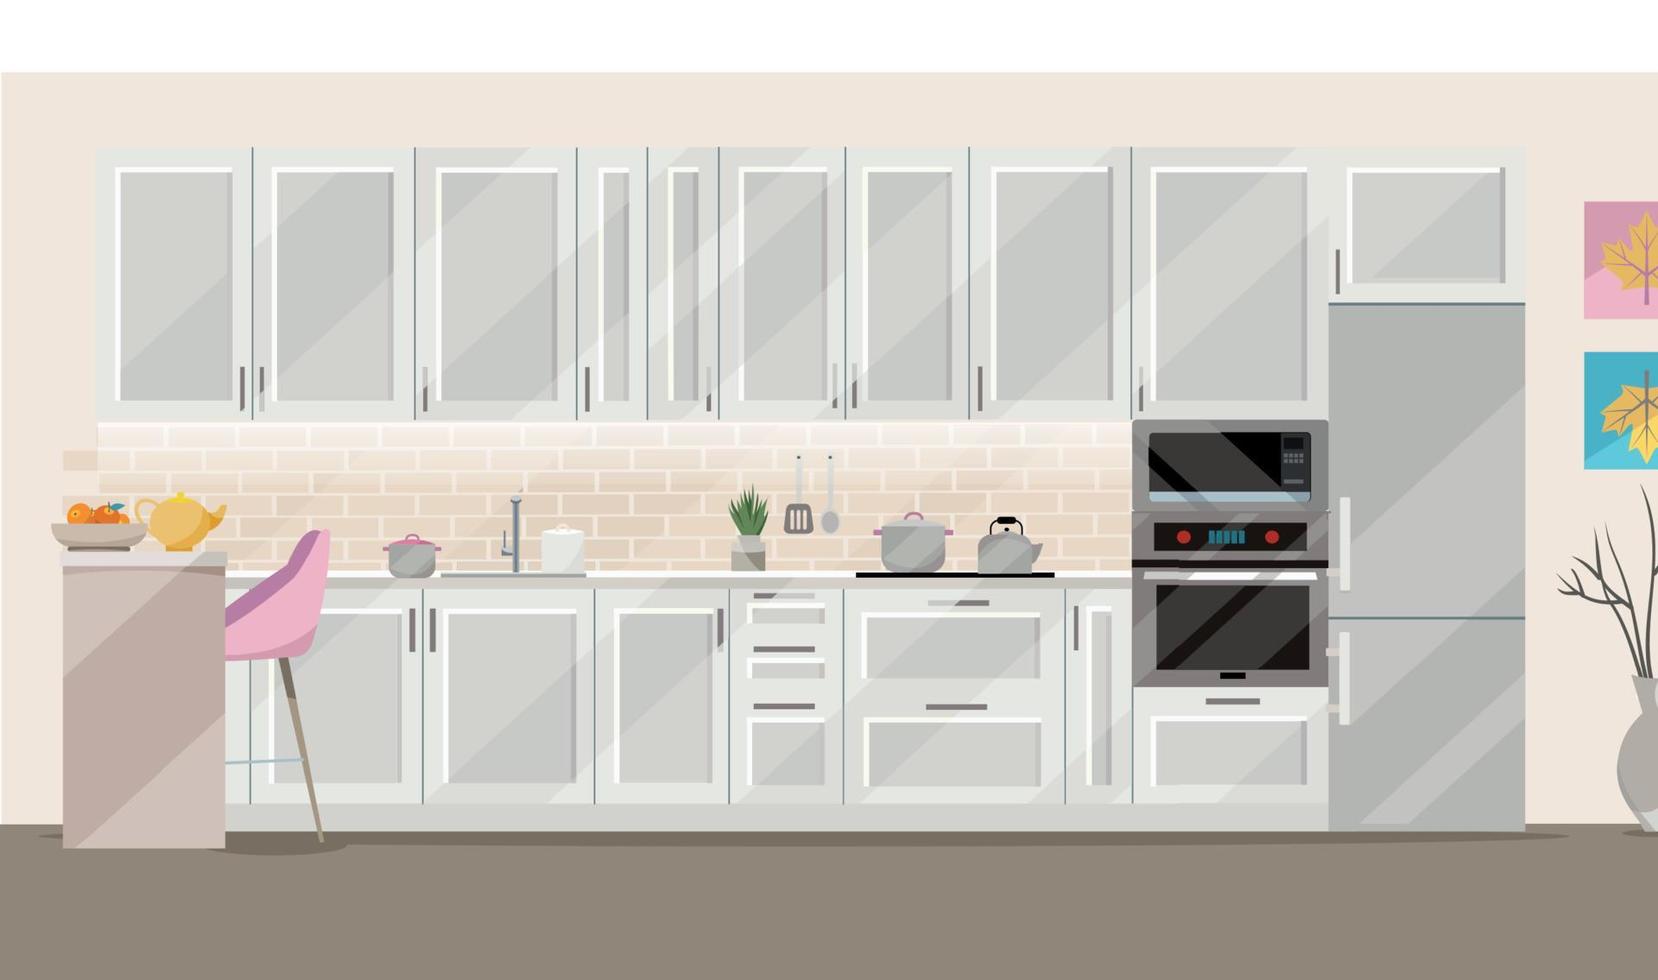 vlak illustratie wit keuken Aan beige achtergrond met keuken accessoires - koelkast, oven, magnetron. dining tafel met 4 stoelen door venster met transparant gordijnen, thee, theepot. vector